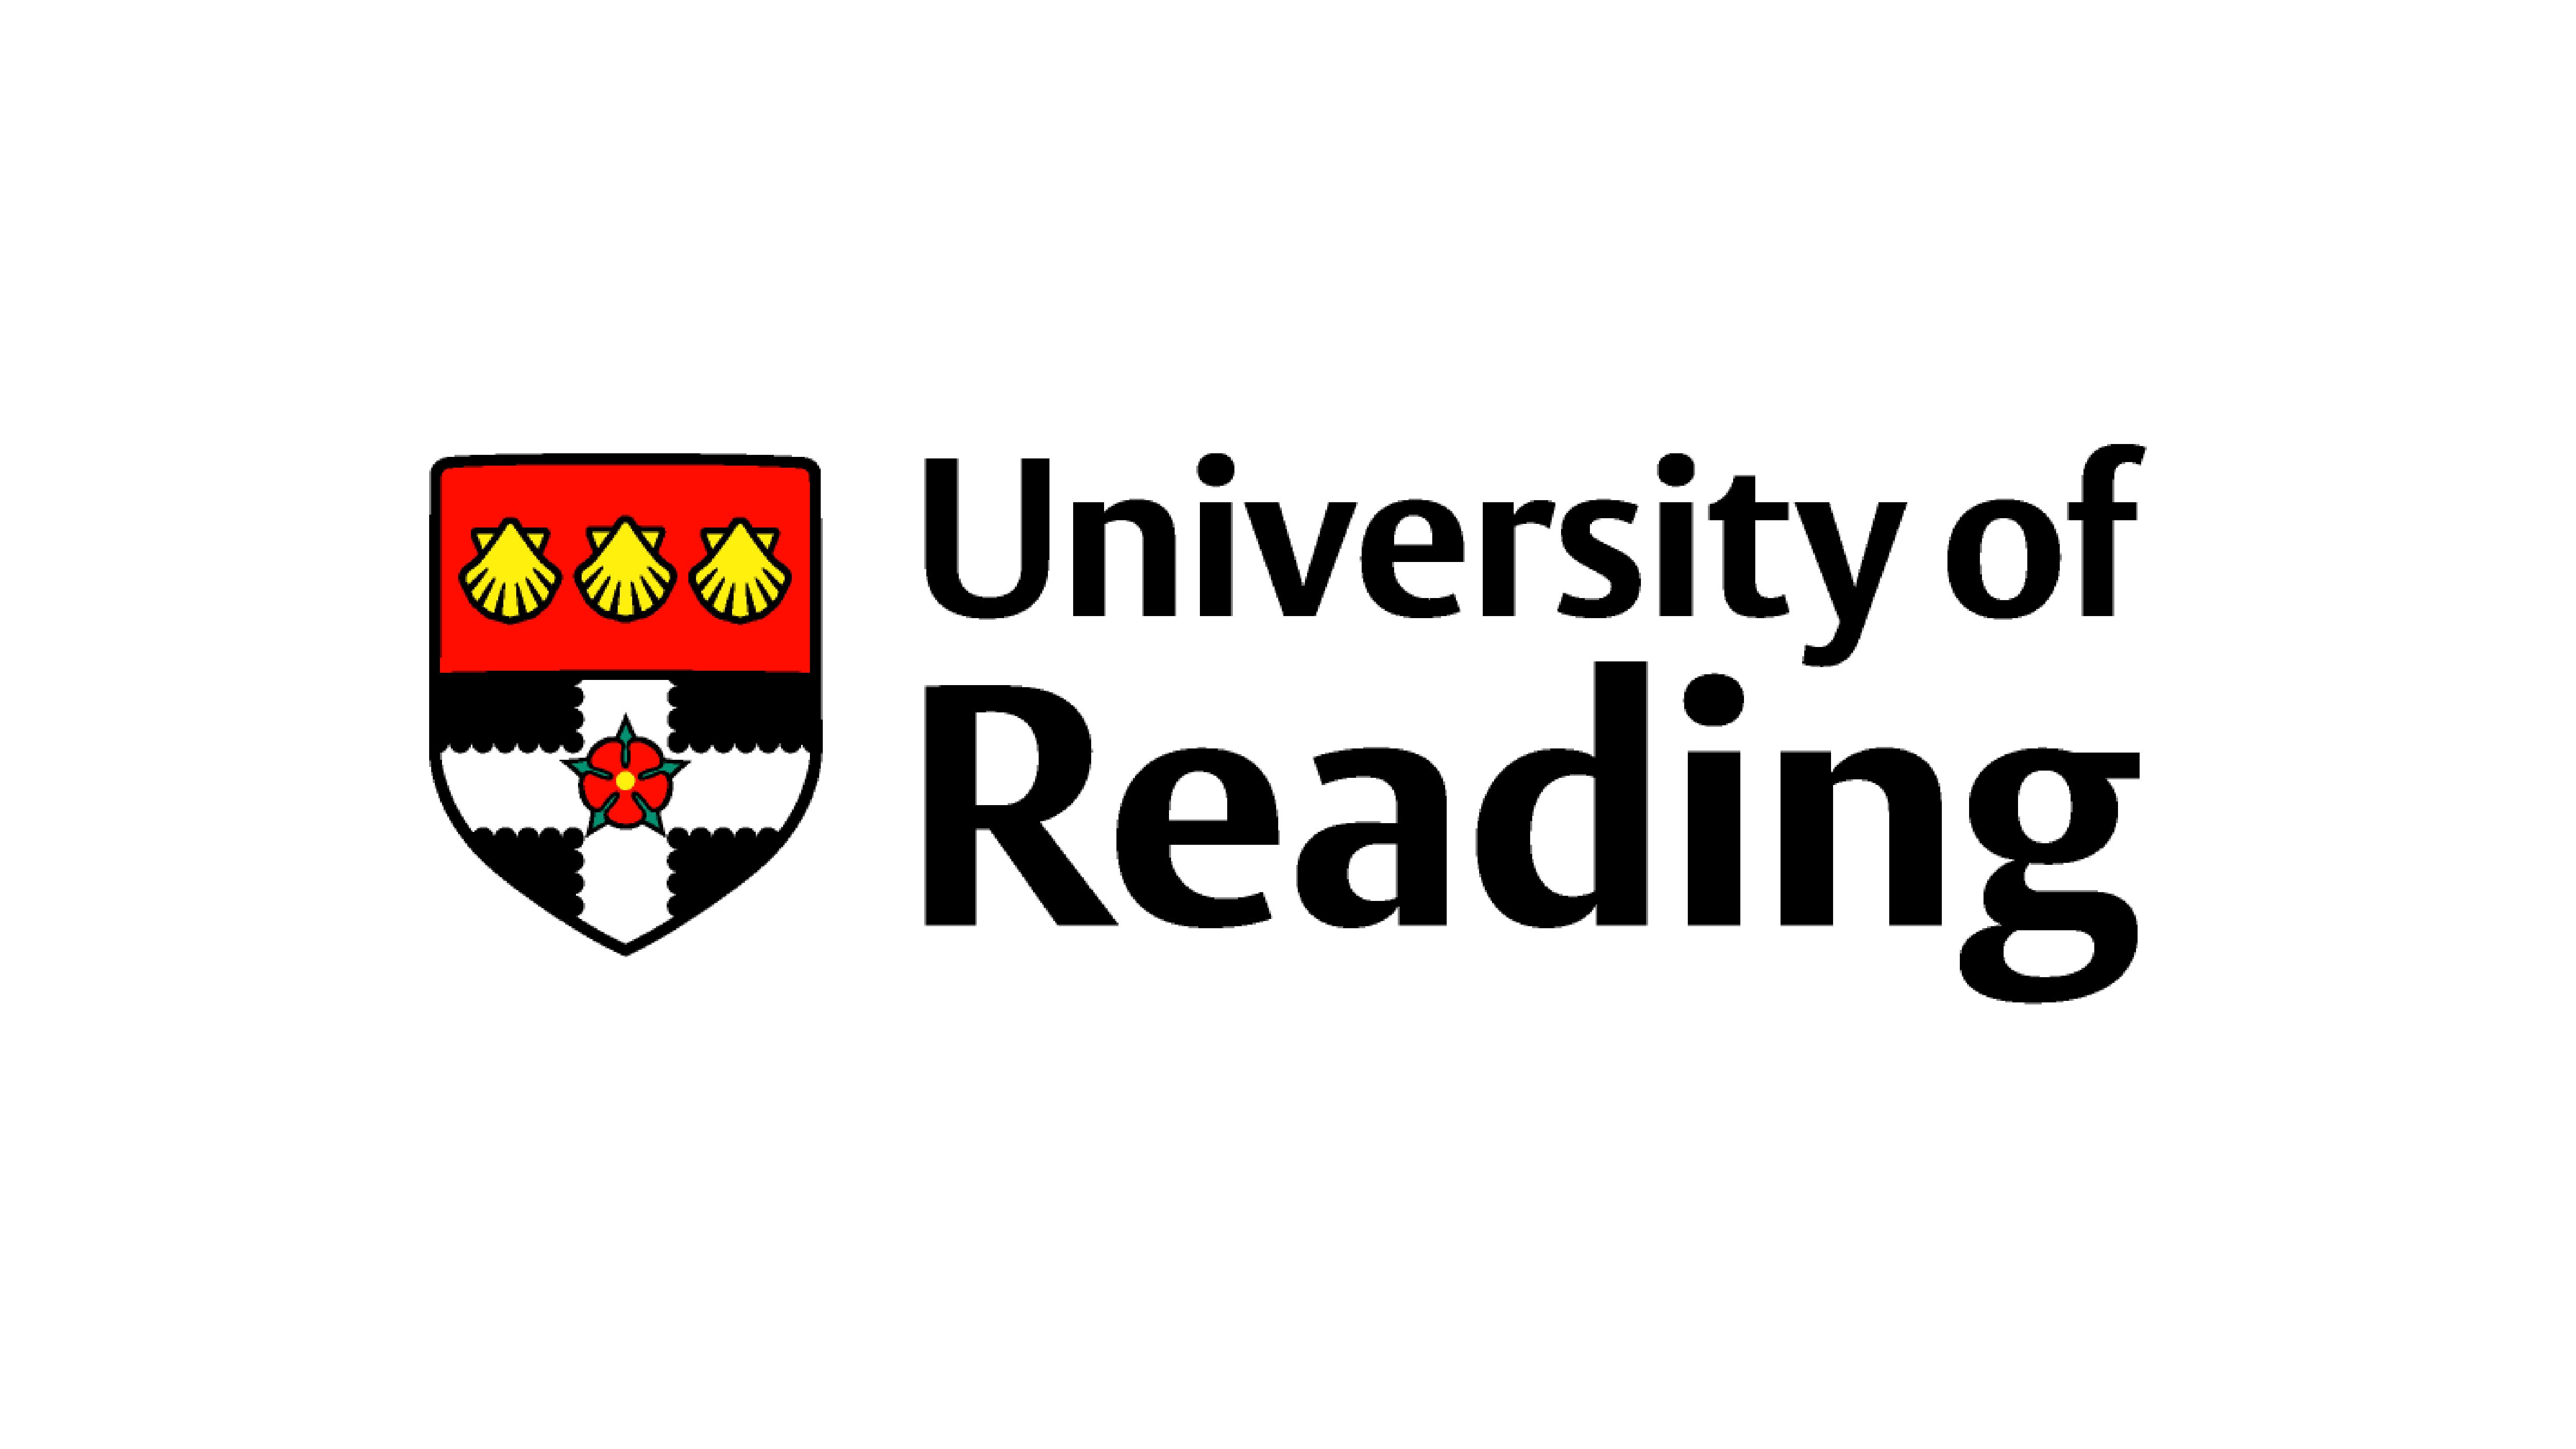 University of Reading logo on a white background.